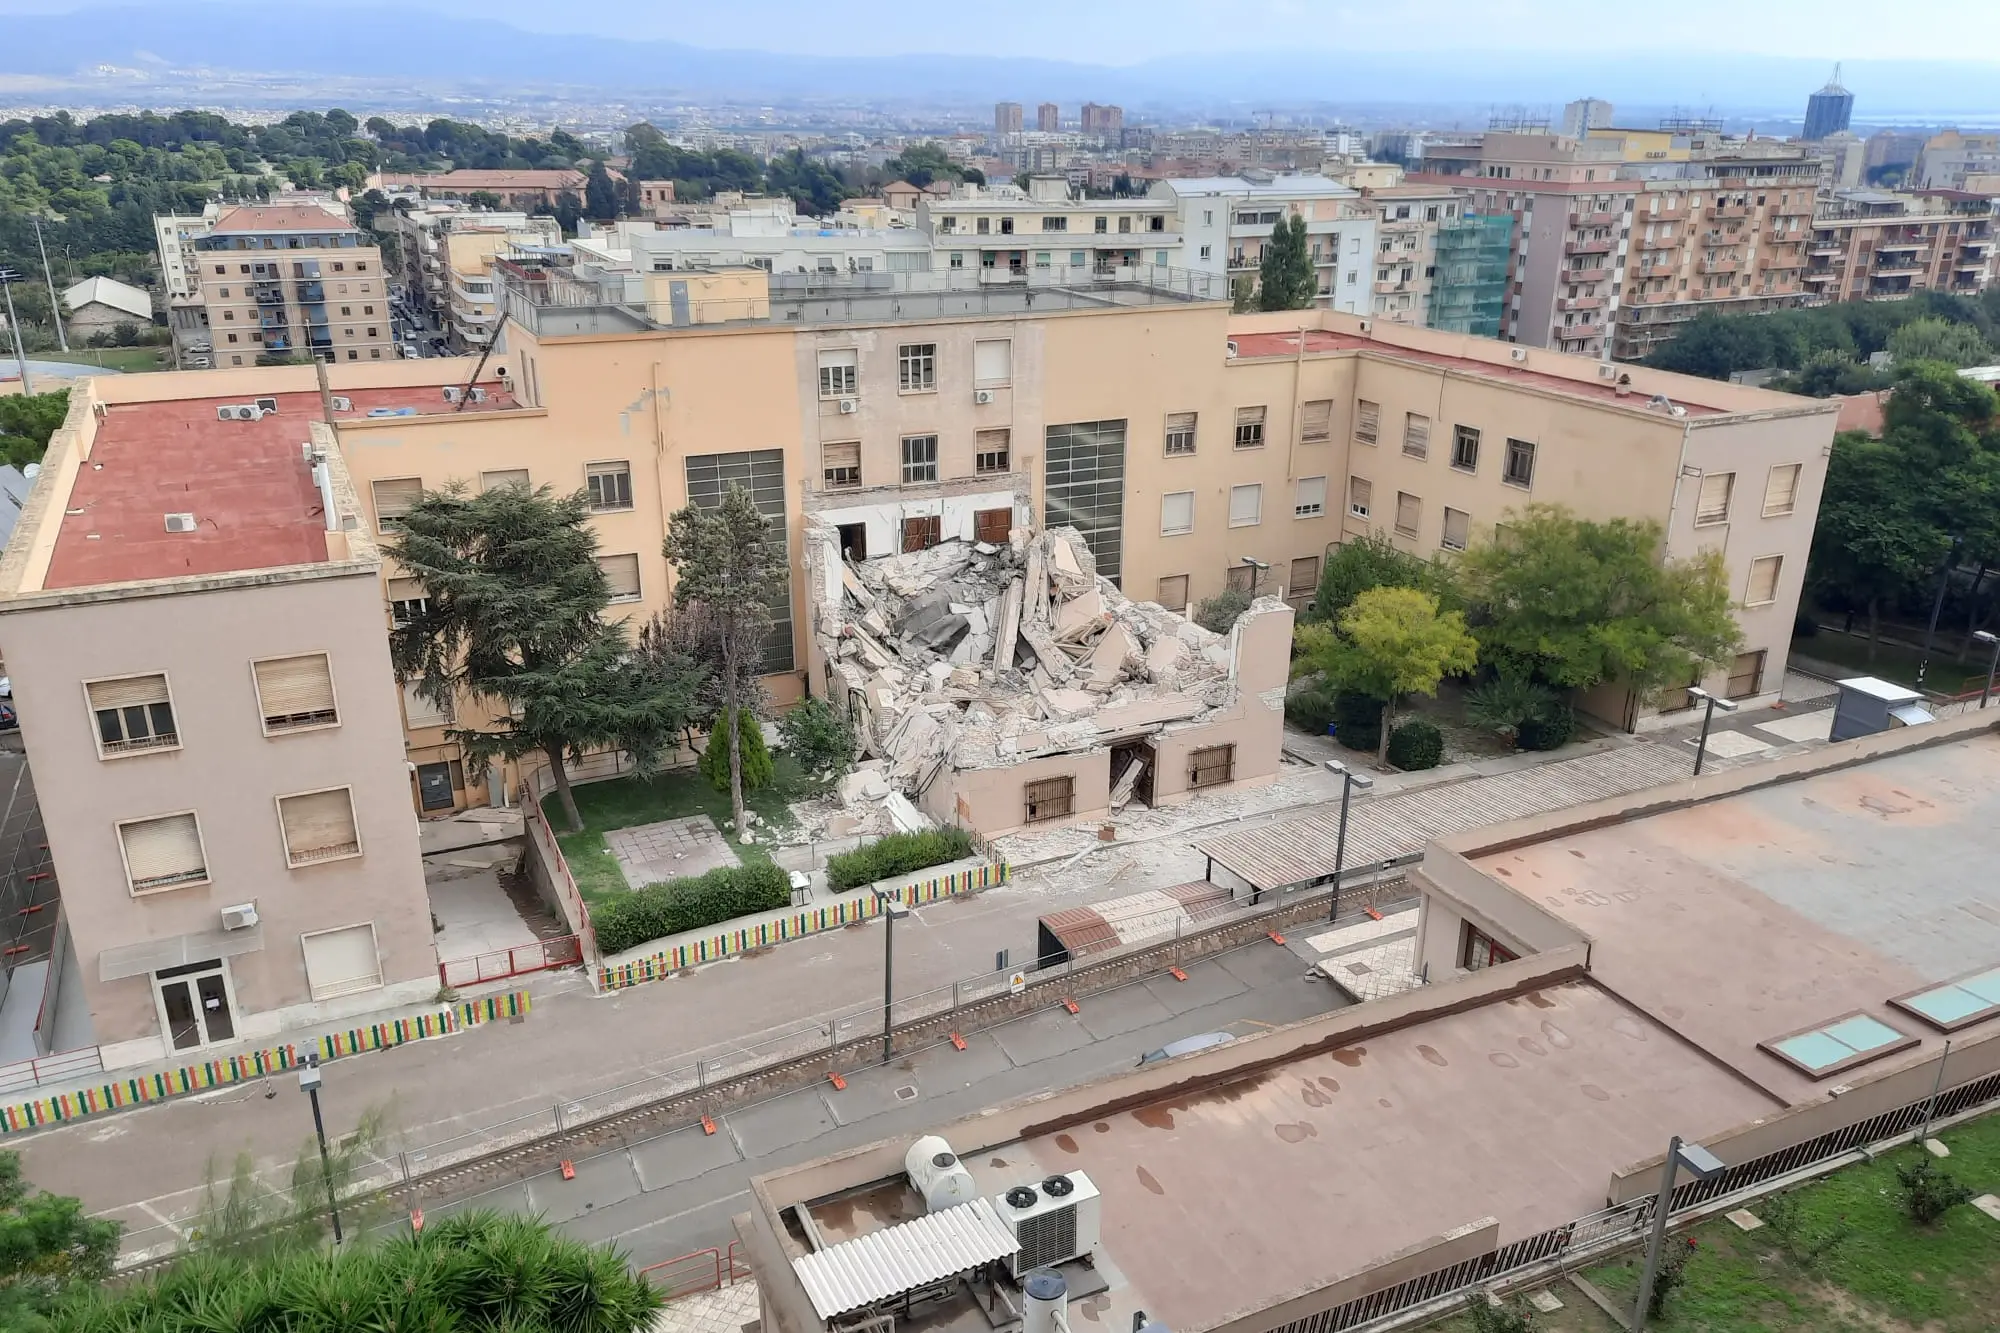 L'Università di Cagliari dopo il crollo (foto Vercelli)